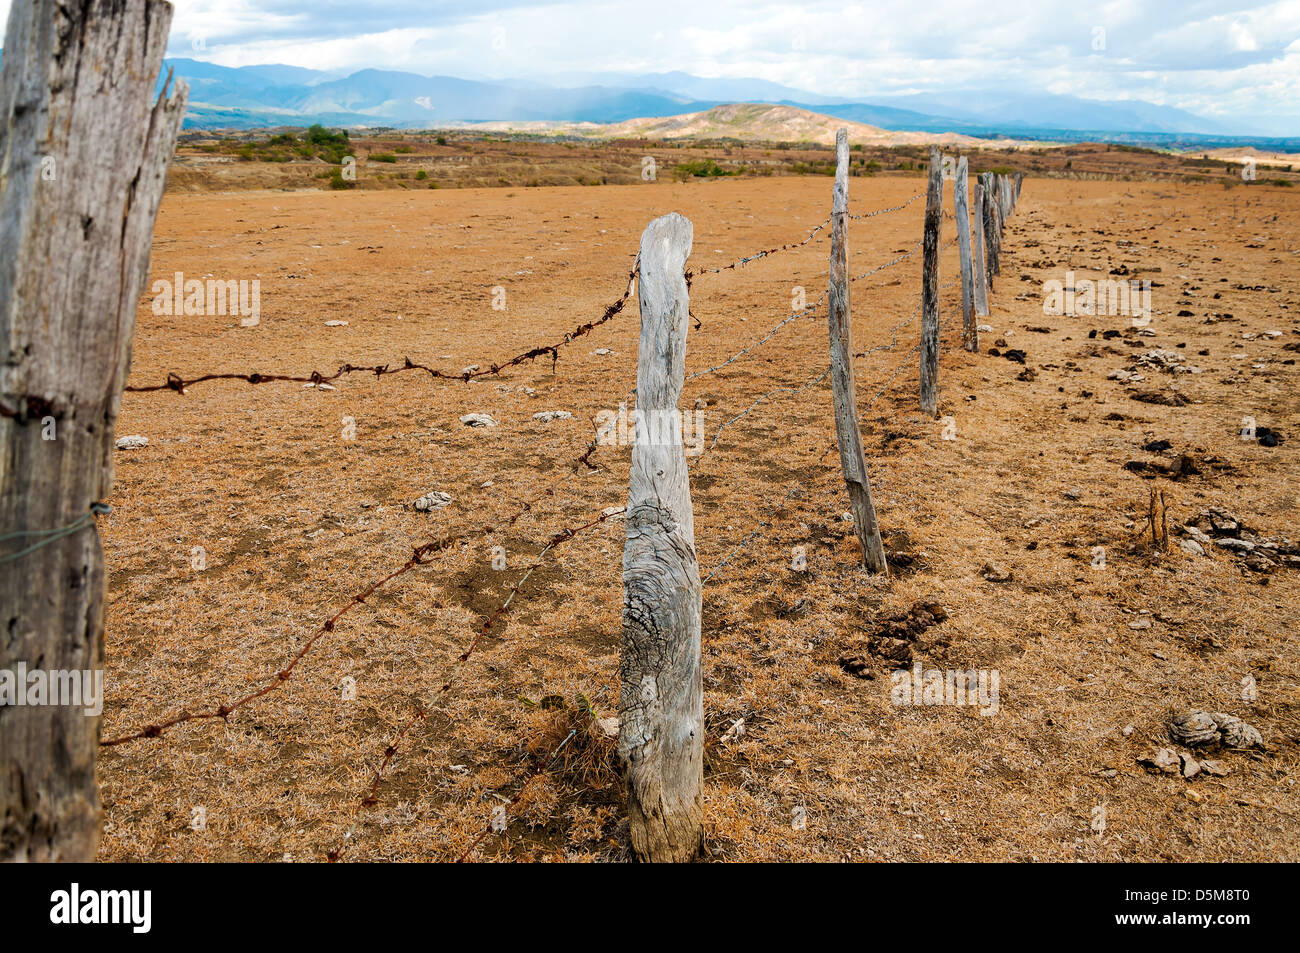 Alten verwitterten Zaunpfosten in einer trockenen ariden region Stockfoto